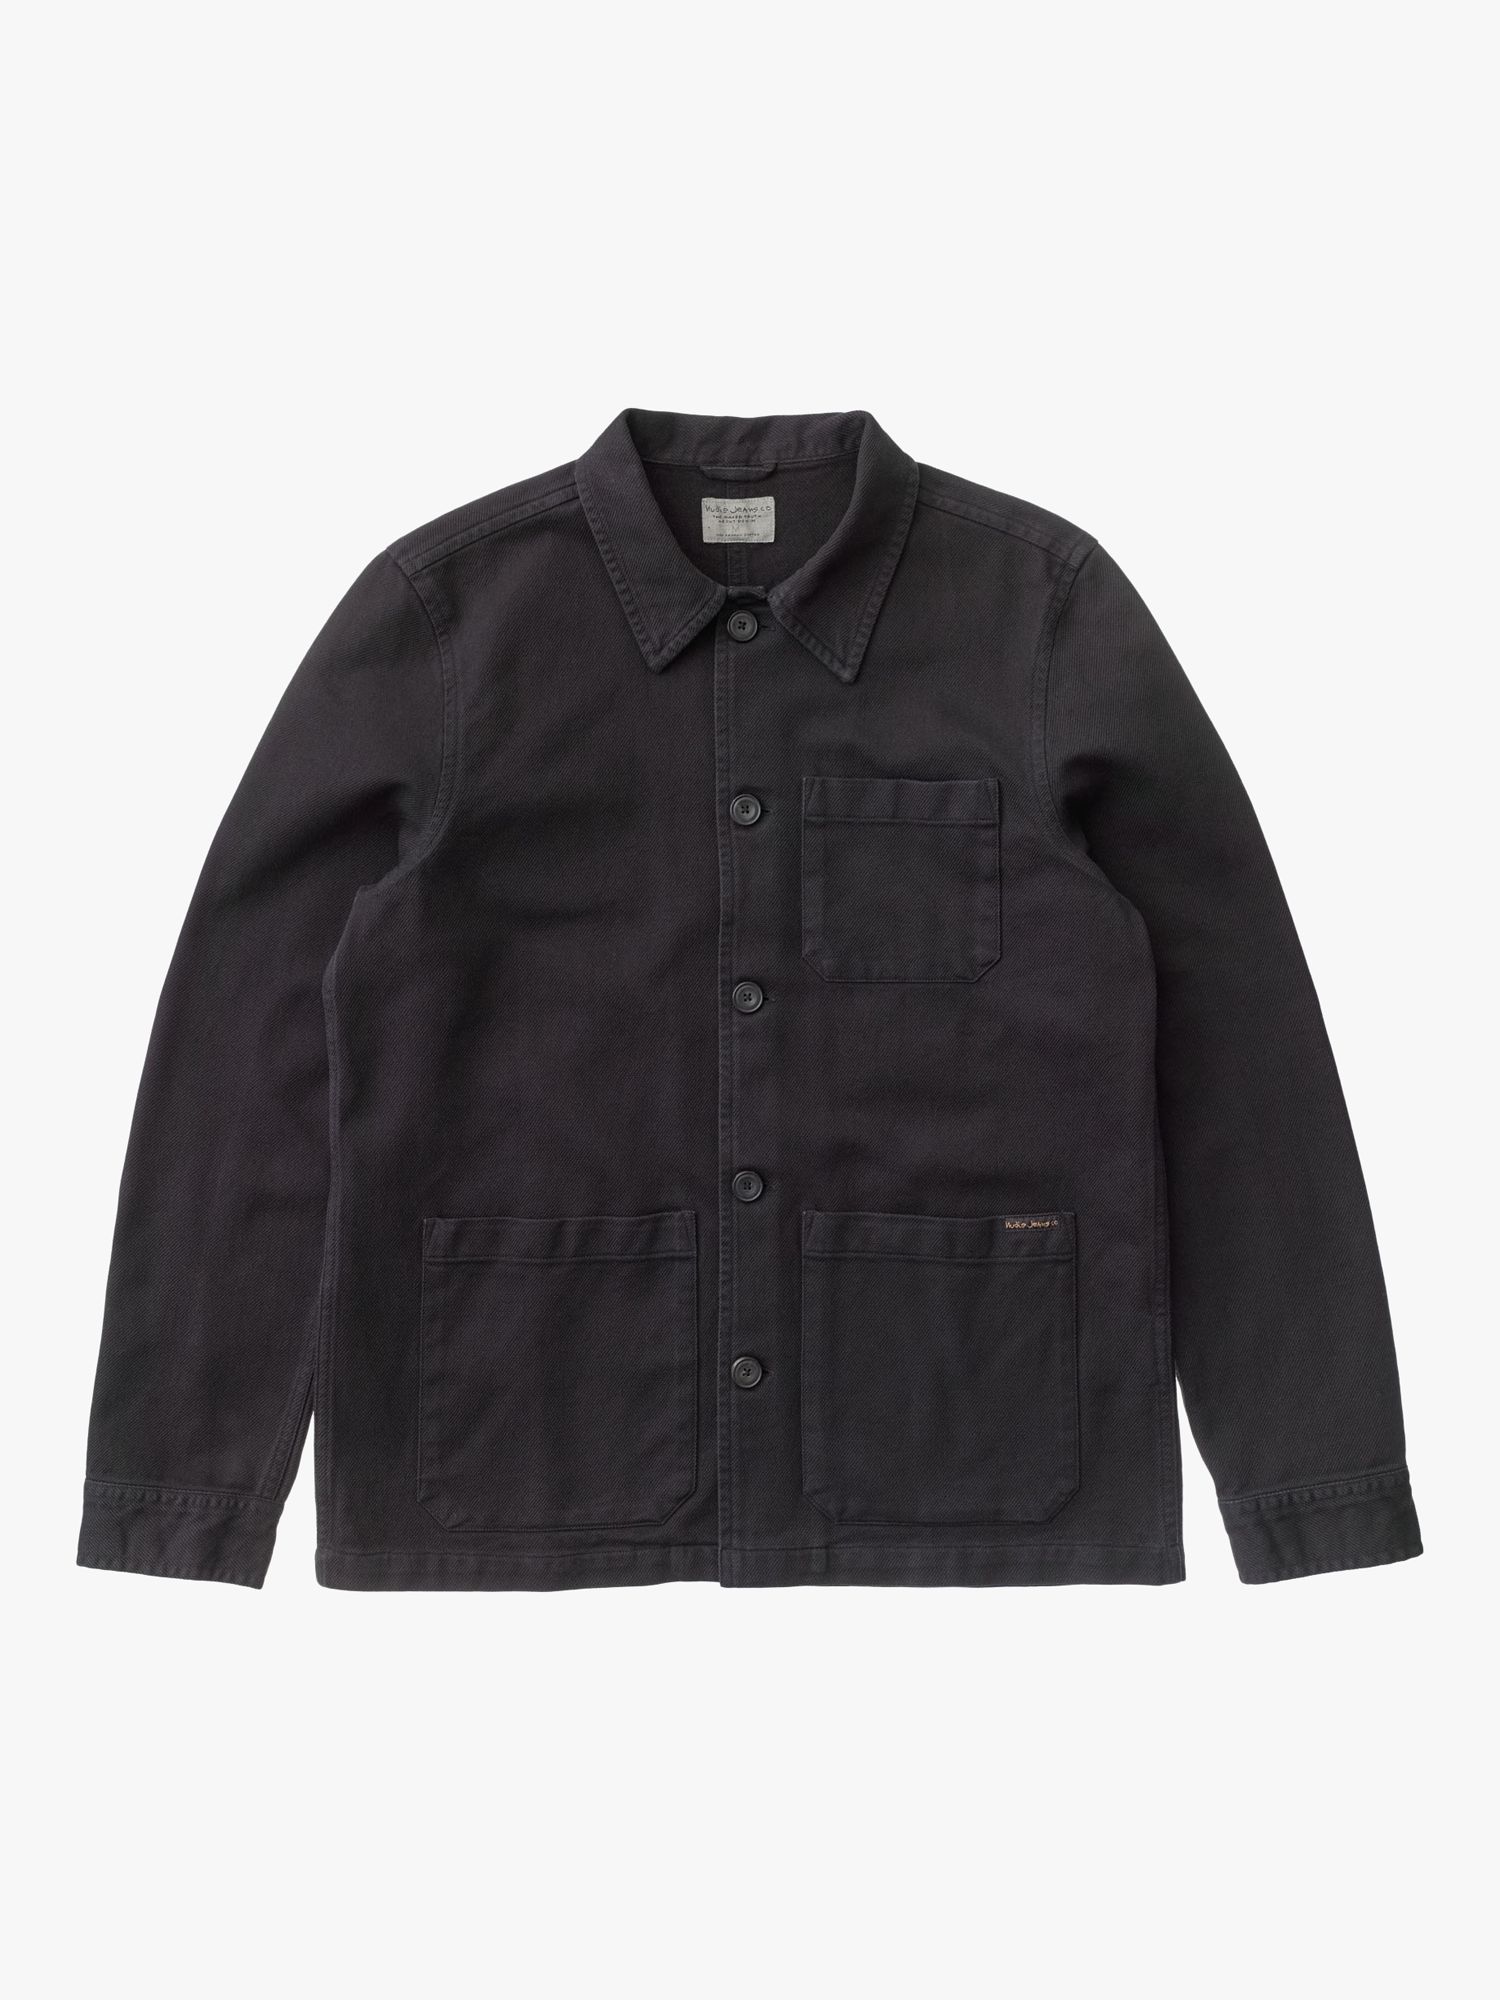 Nudie Jeans Barney Worker Jacket, Black at John Lewis & Partners